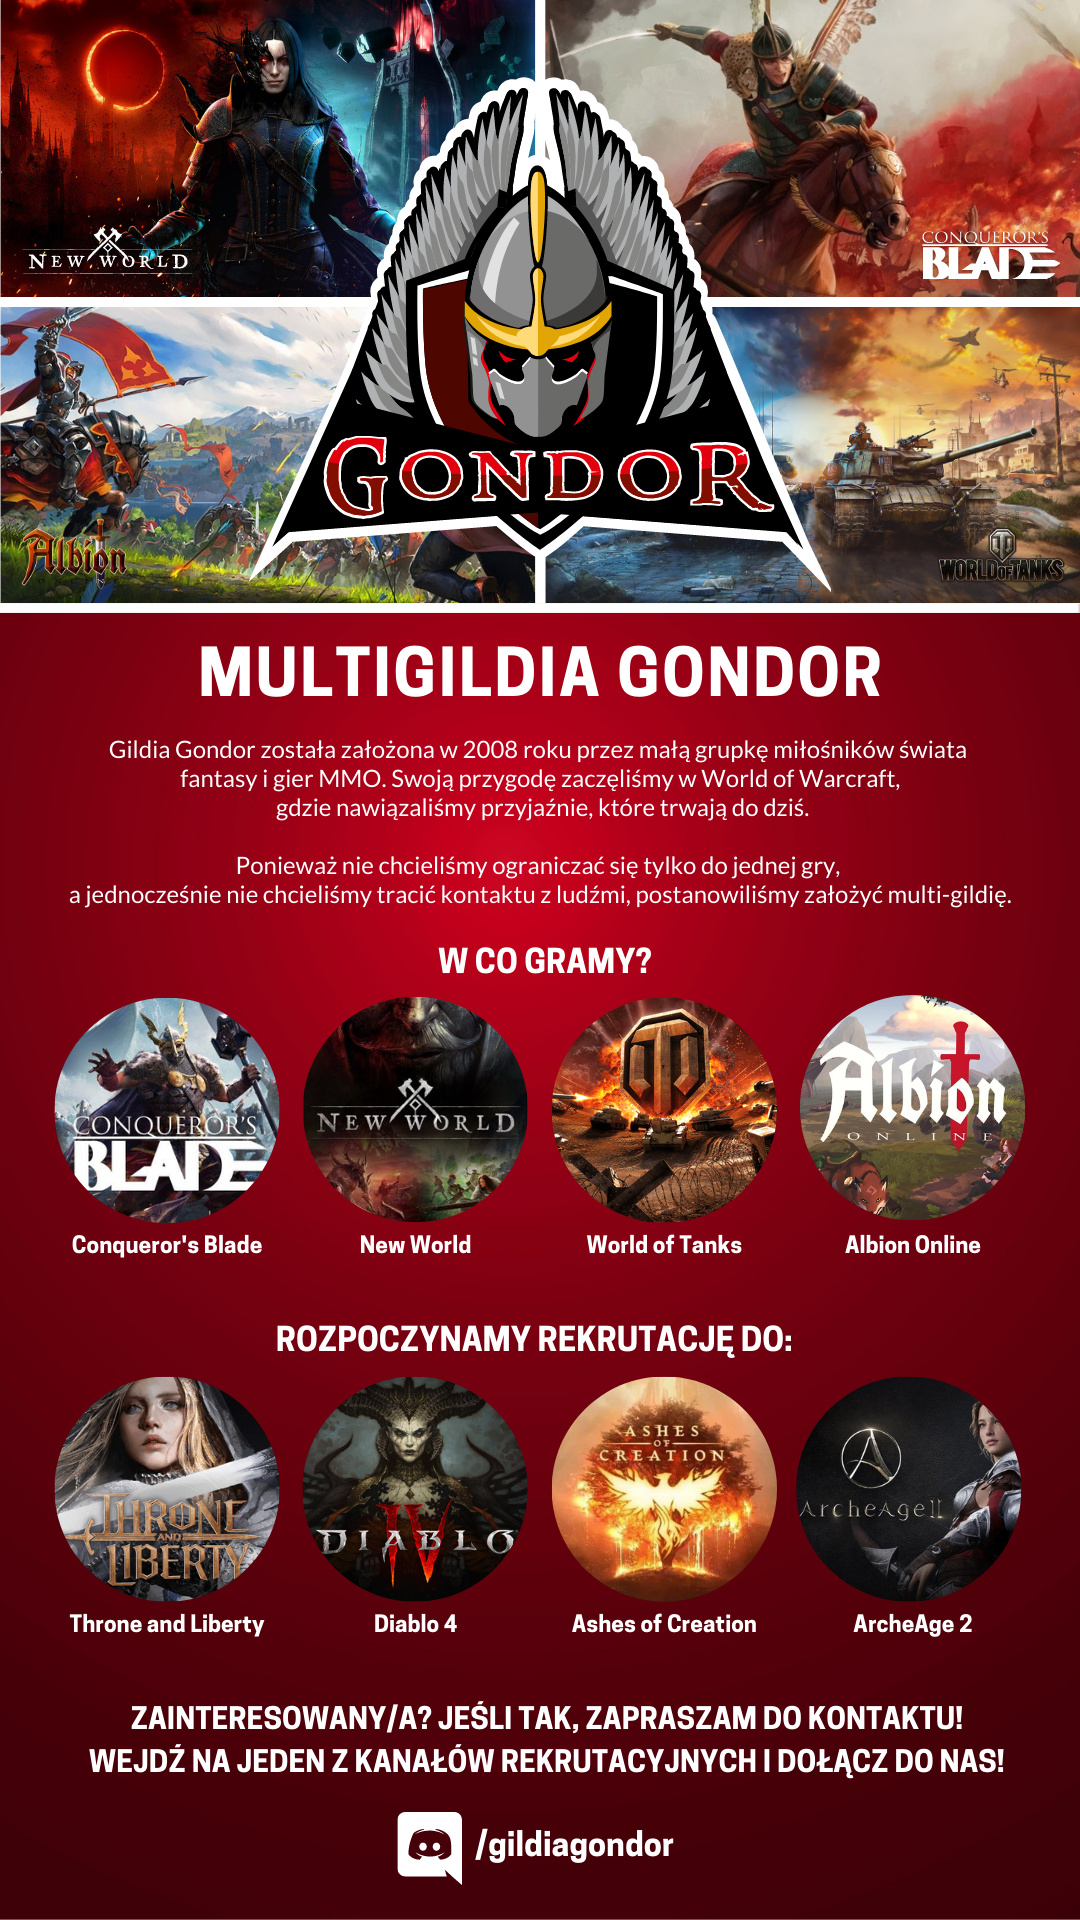 Multigildia Gondor rekrutacja